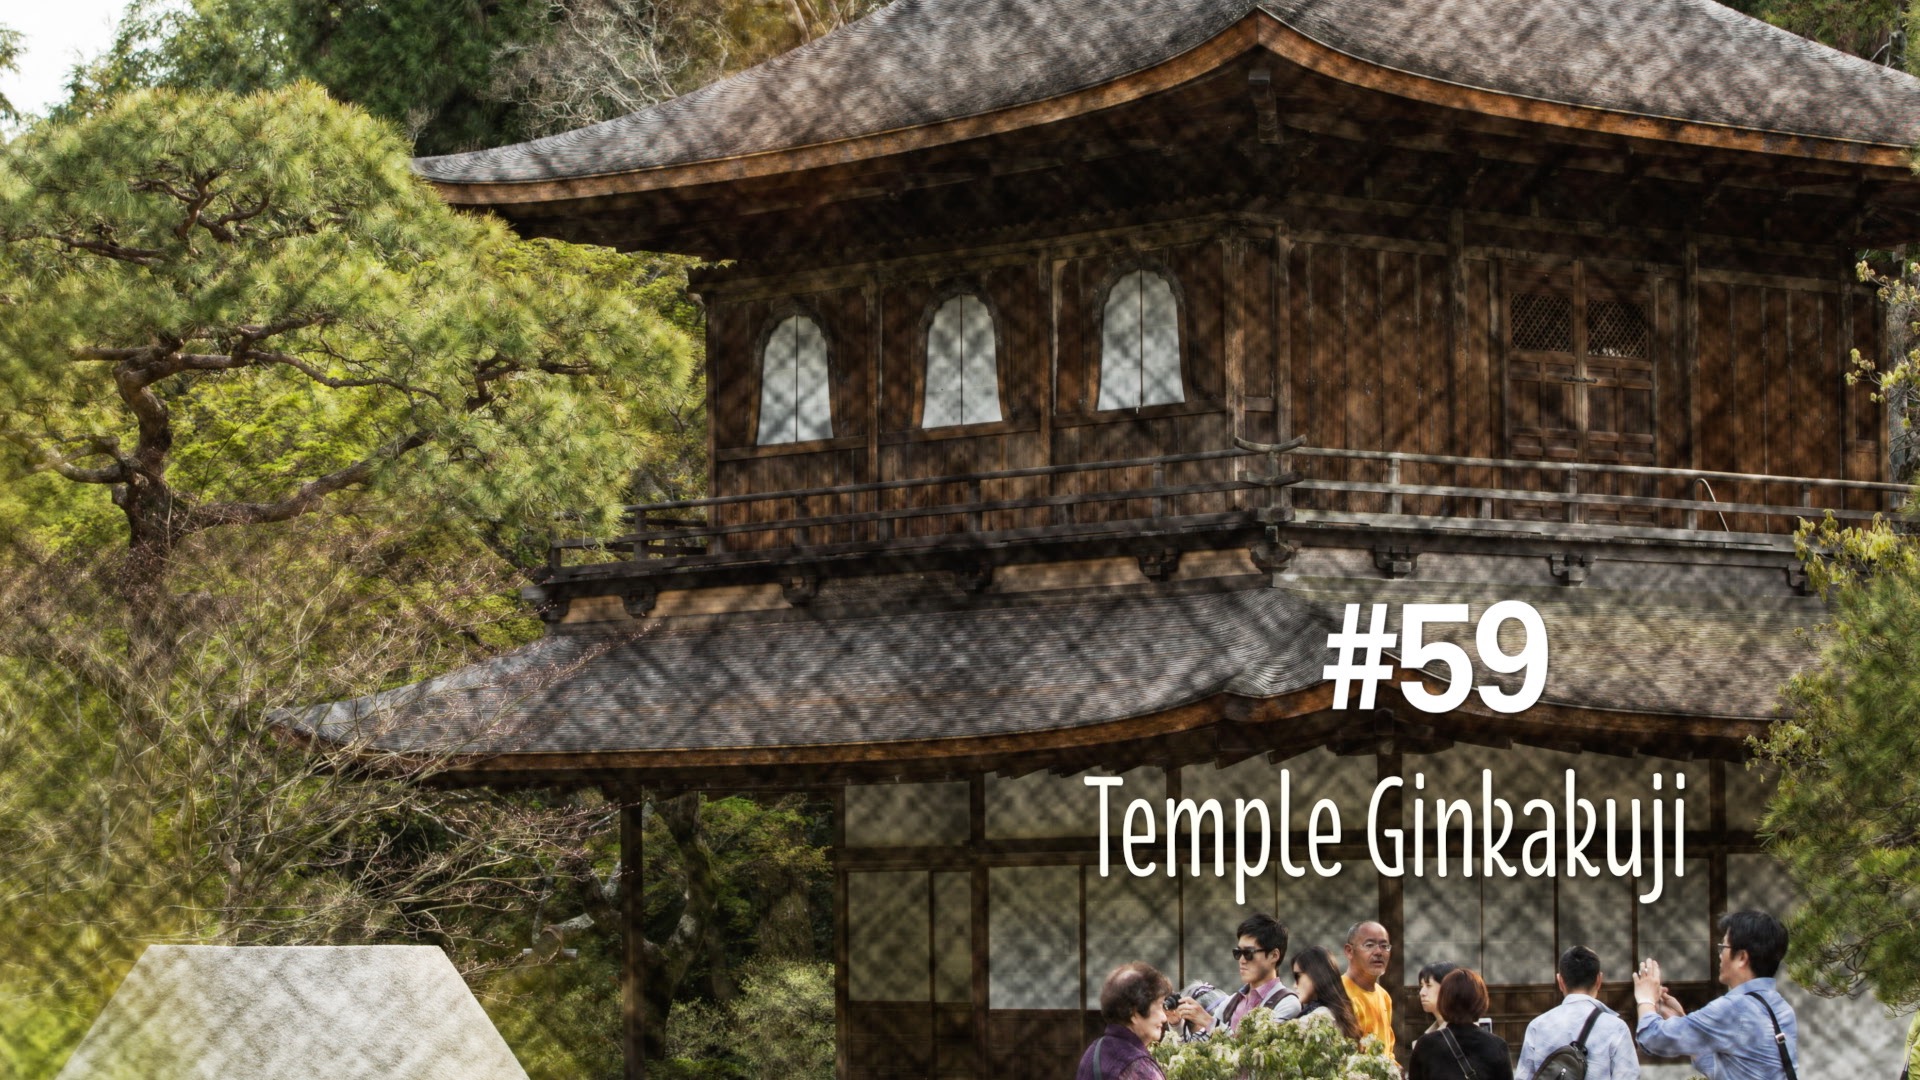 Le temple Ginkaku ji ou le pavillon d’argent (#59)